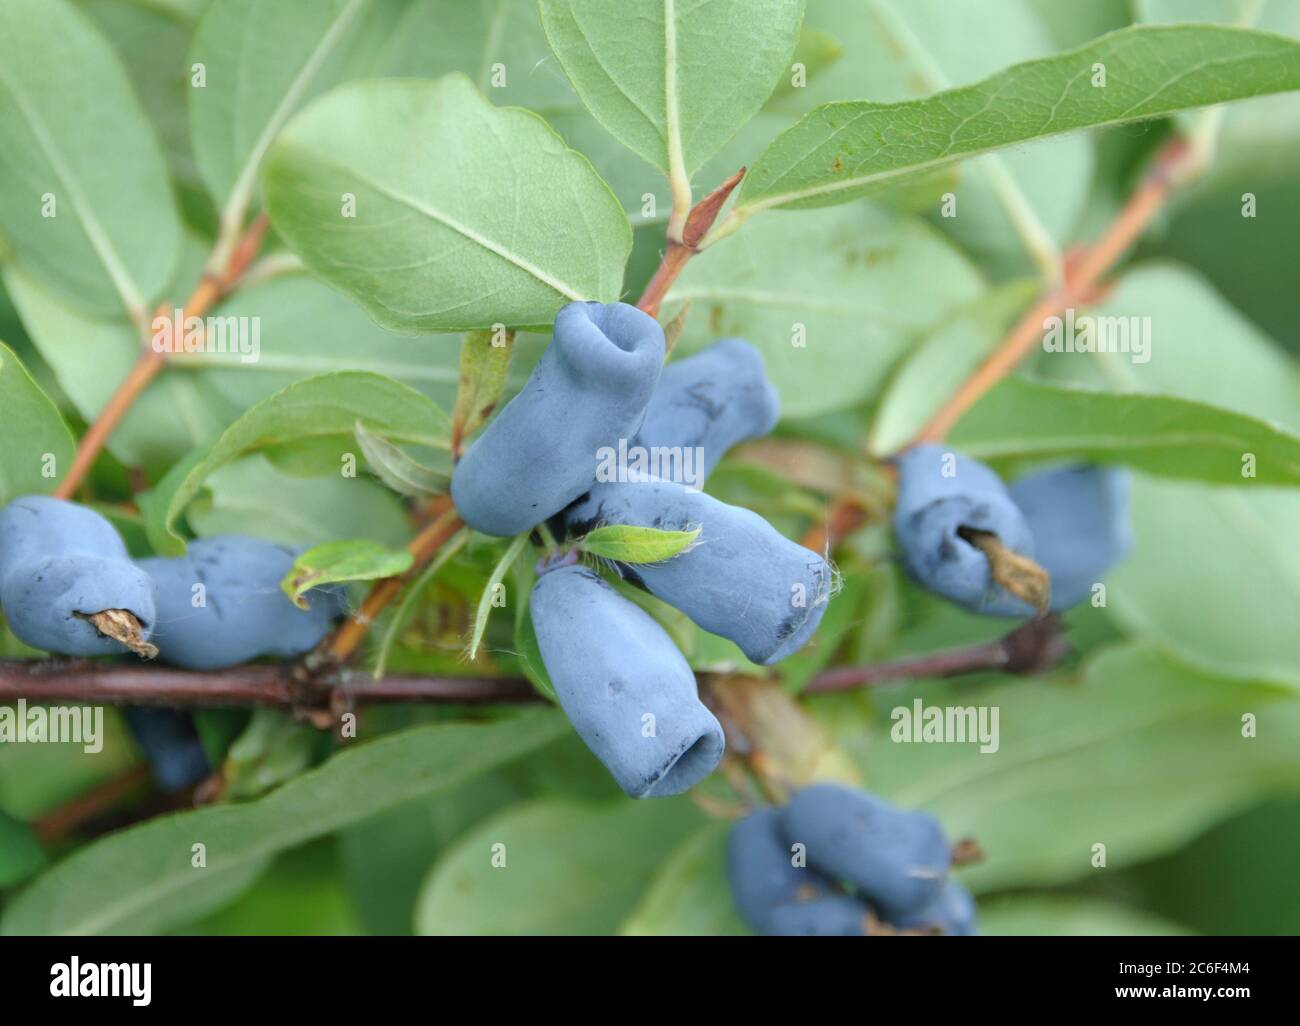 Blaue Honigbeere, Lonicera caerulea Amur, Blue Honey Berry, Lonicera caerulea Amur Stock Photo